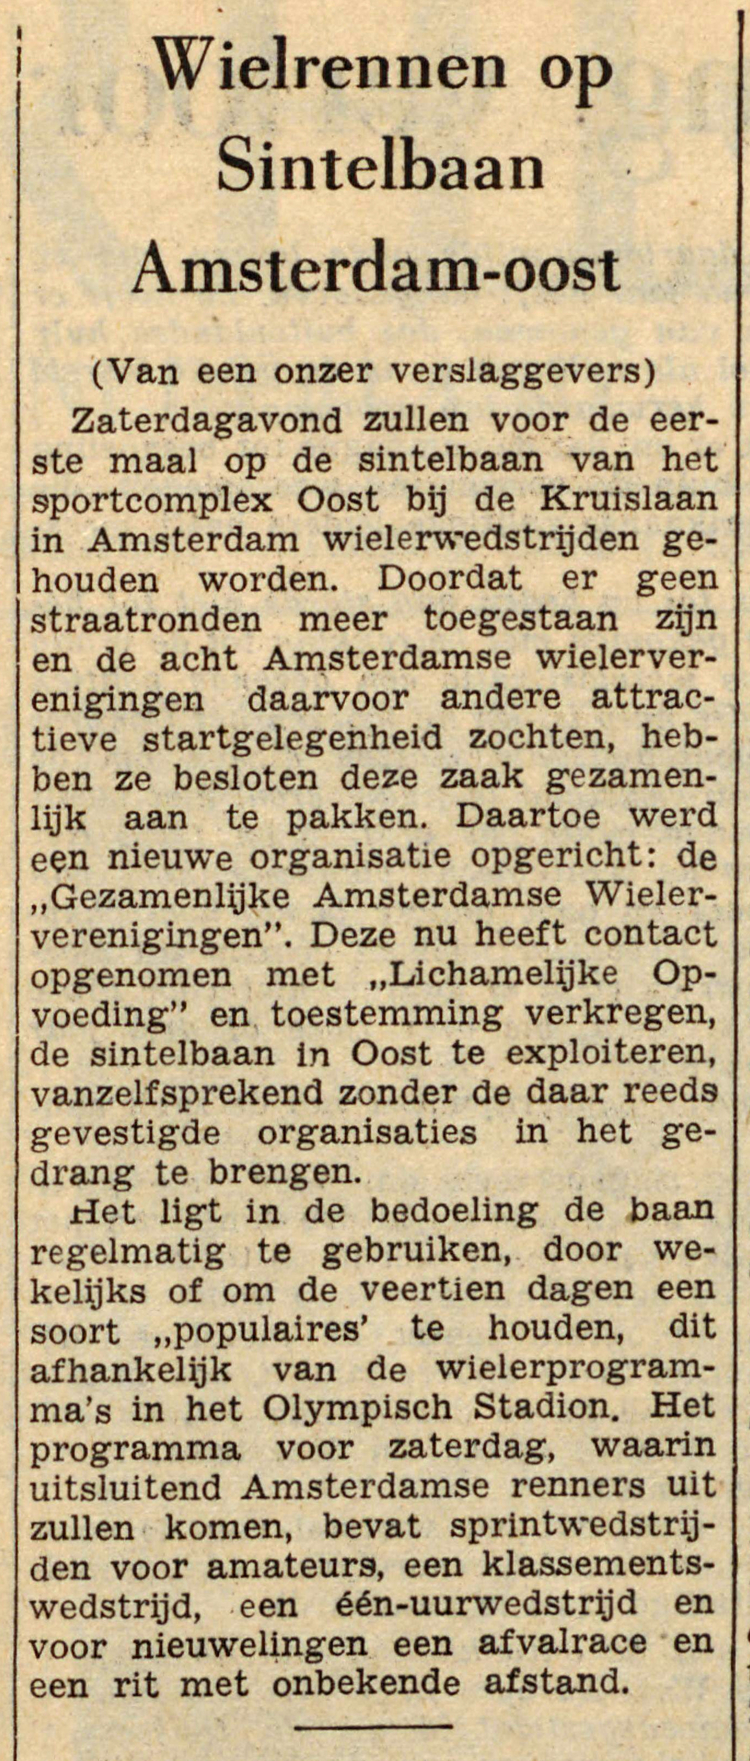 13 juni 1956 - Wielrennen op de Sintelbaan in Amsterdam - Oost  